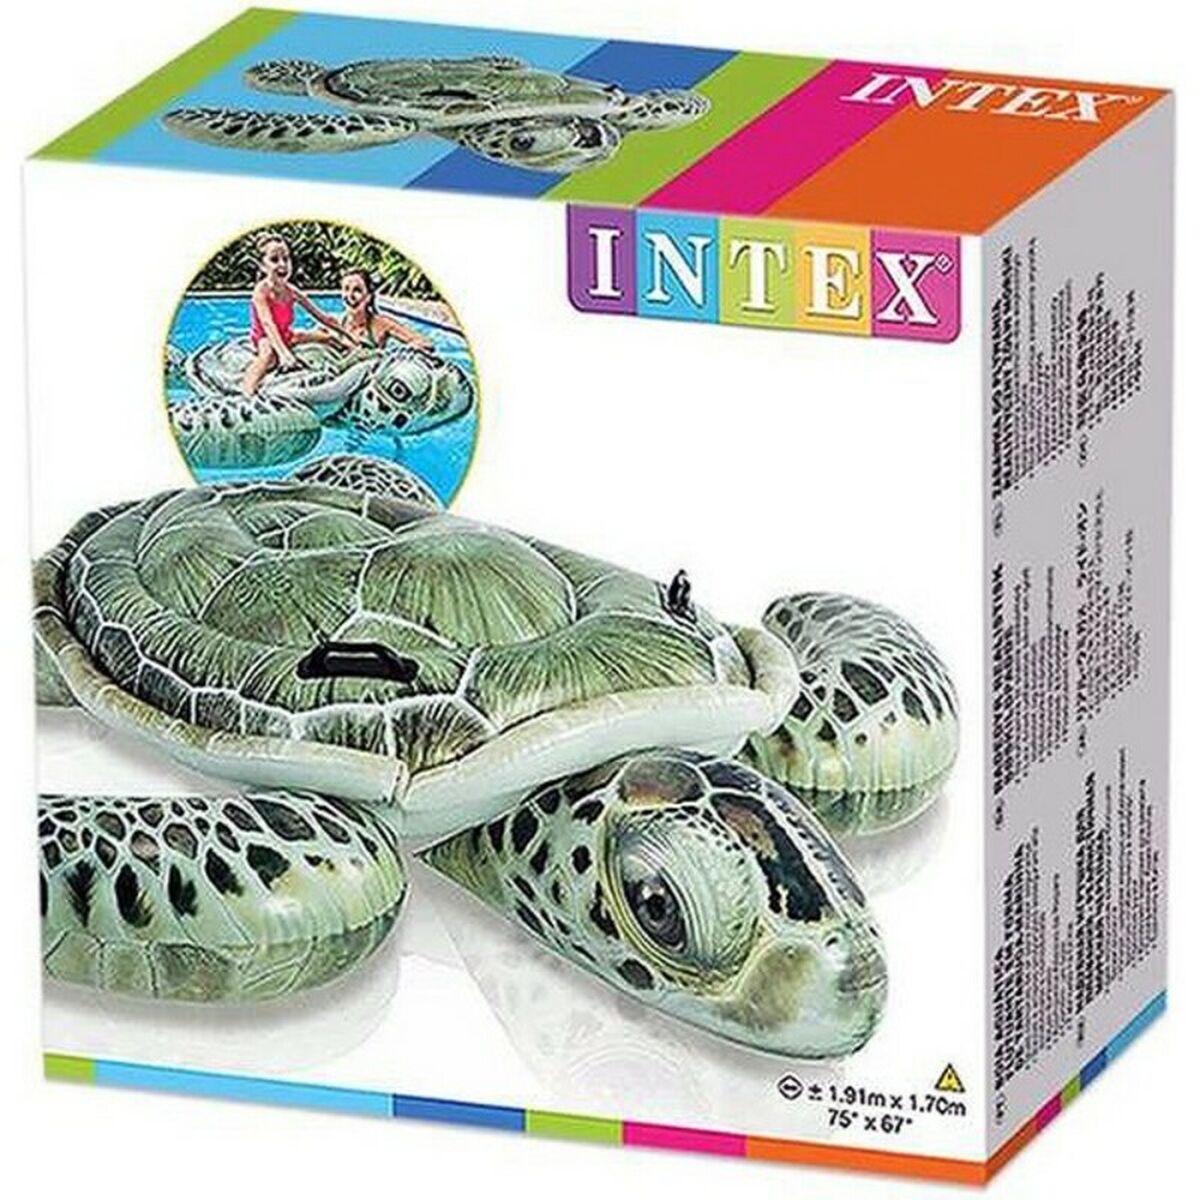 Inflatable pool figure Intex 9557555